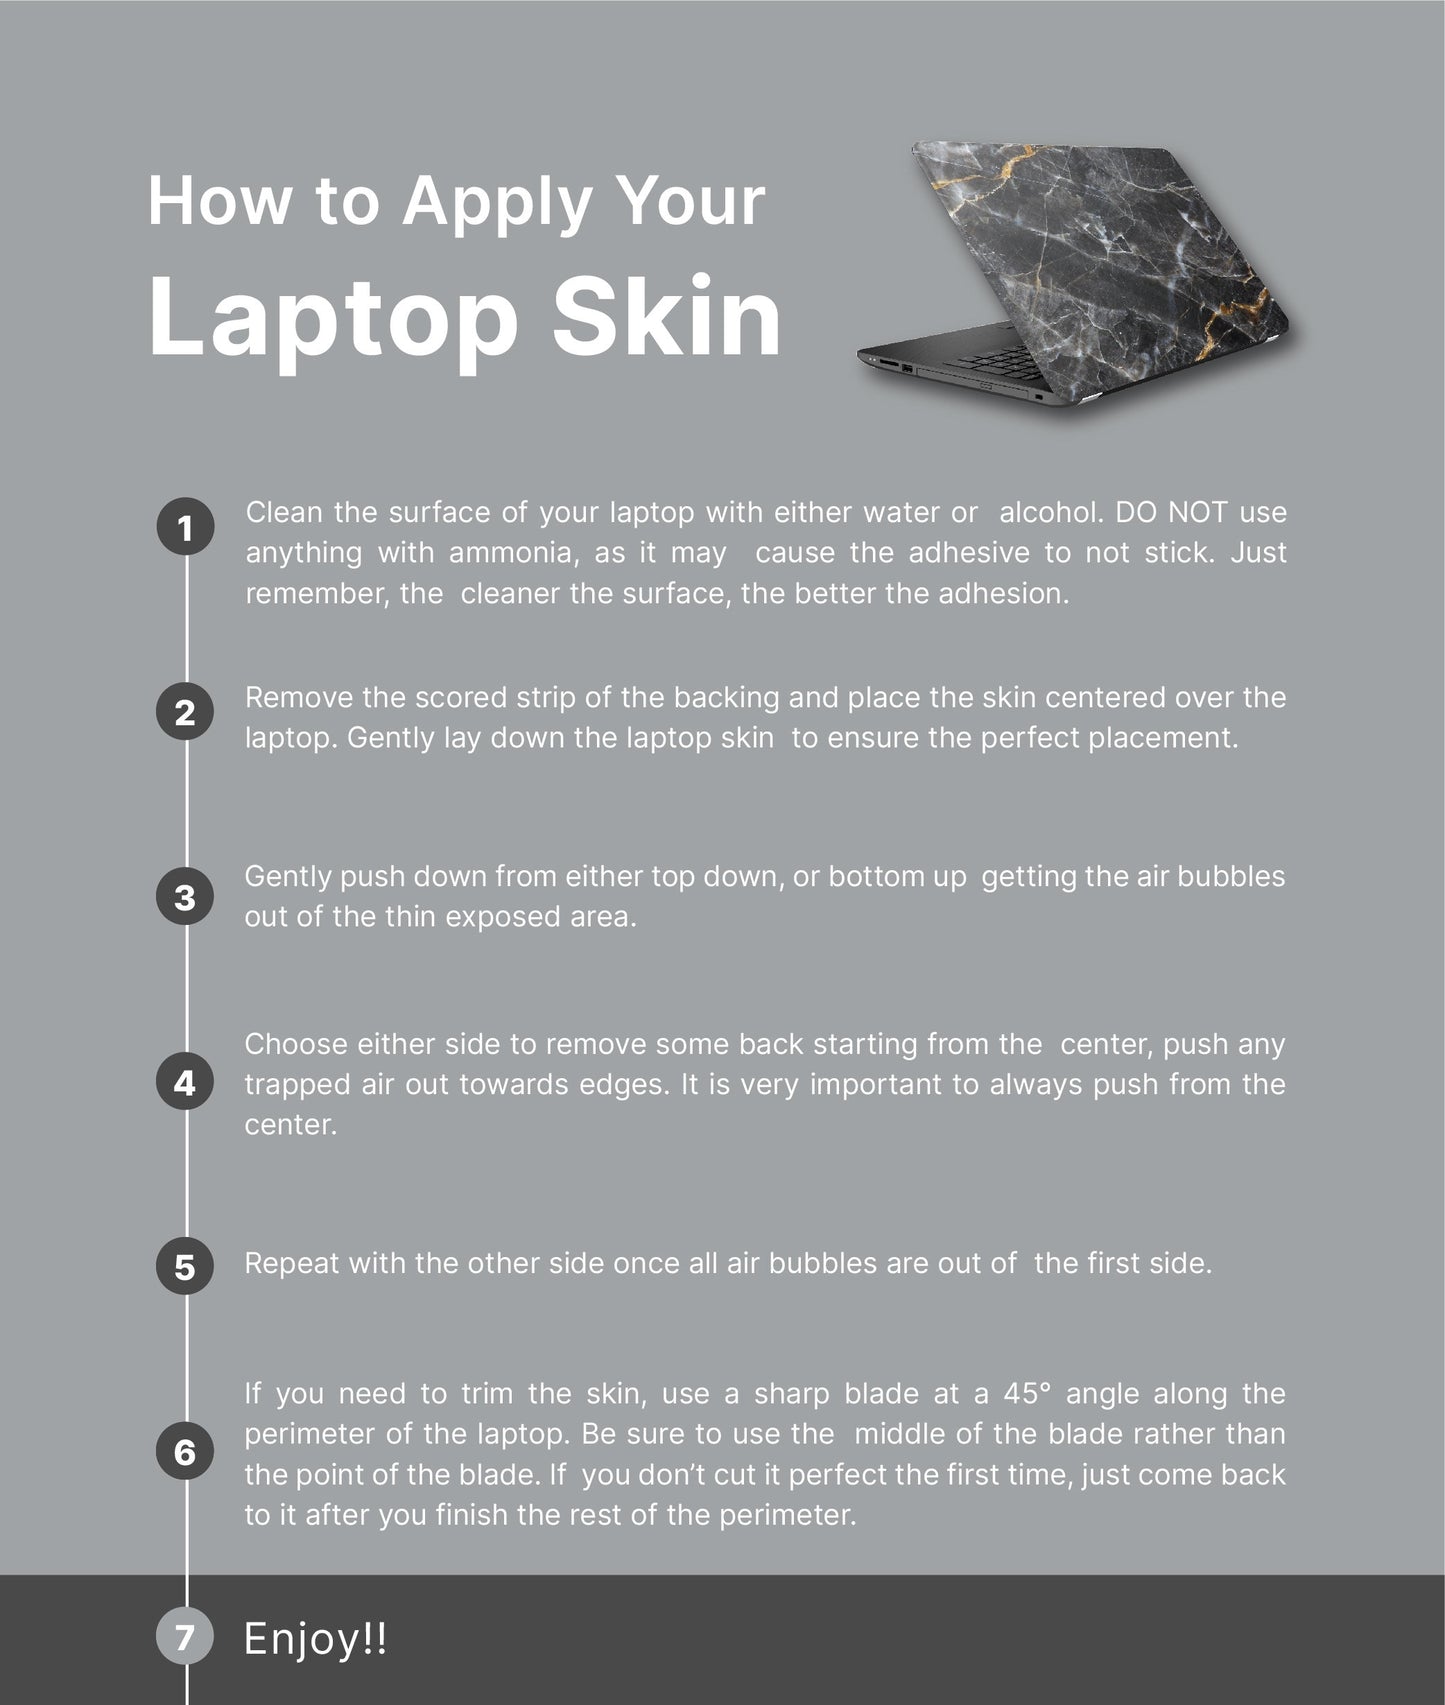 Daisies Floral Laptop Skin, Laptop Cover, Laptop Skins, Removable Laptop Skins, Laptop Decal, Customized Laptop Skin, Laptop Stickers 157